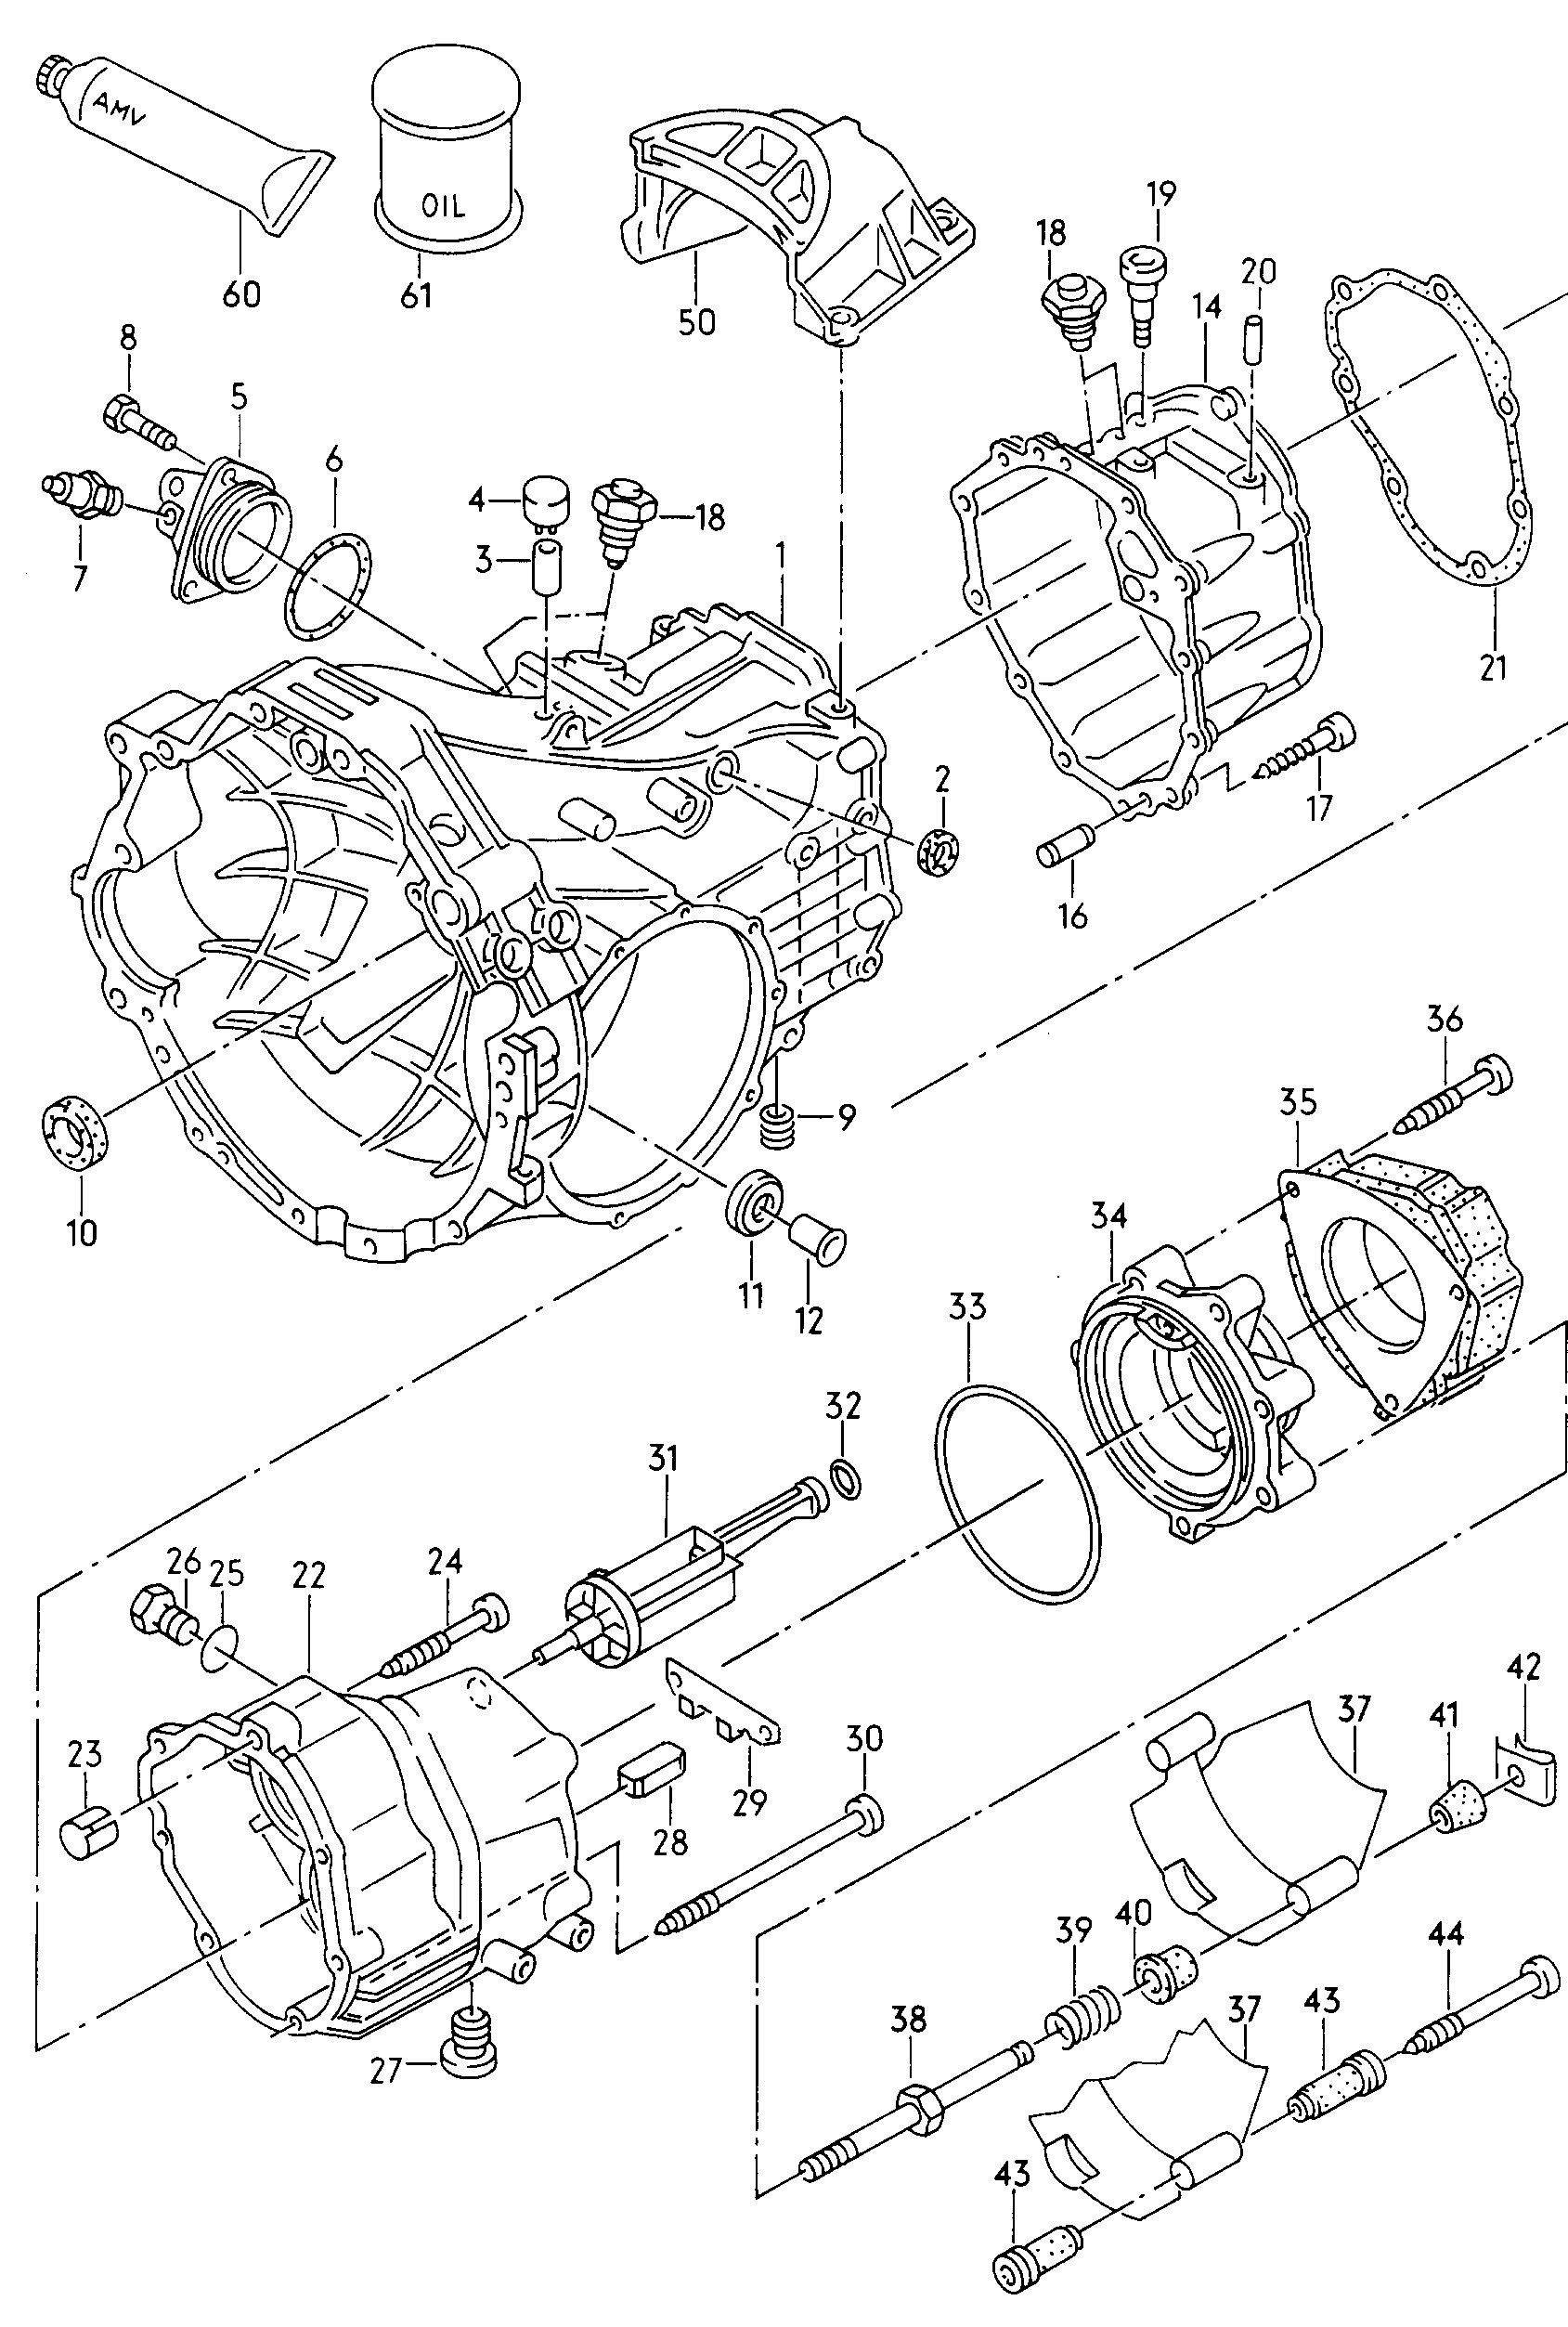 Gear housingfor 6 speed manual gearbox  - Audi V8 - v8